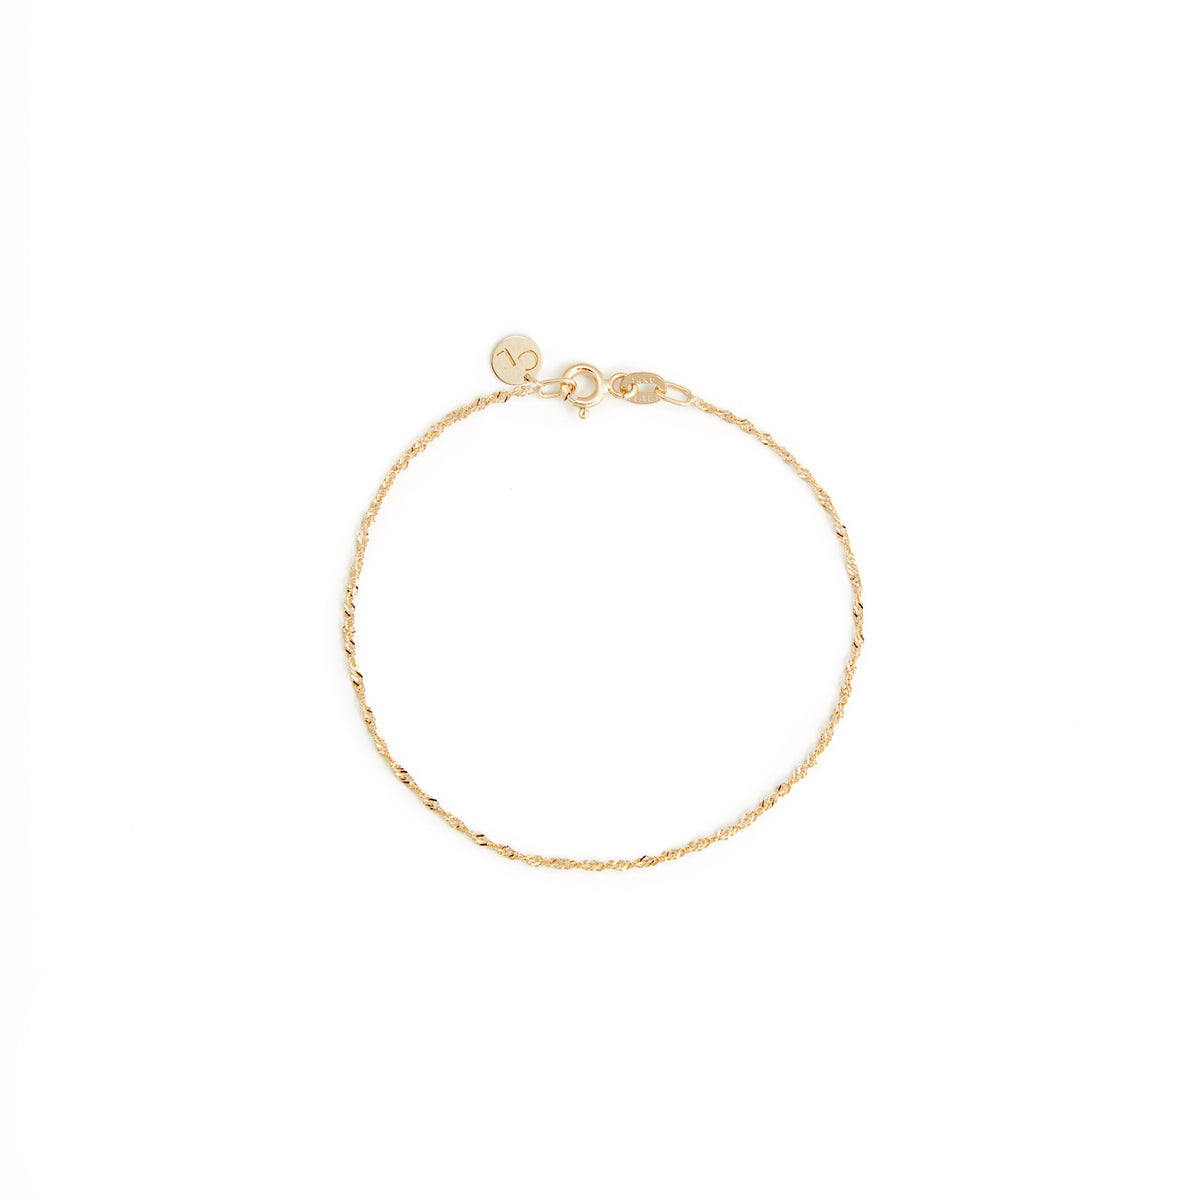 Torsade Bracelet - 10 Karat Gold